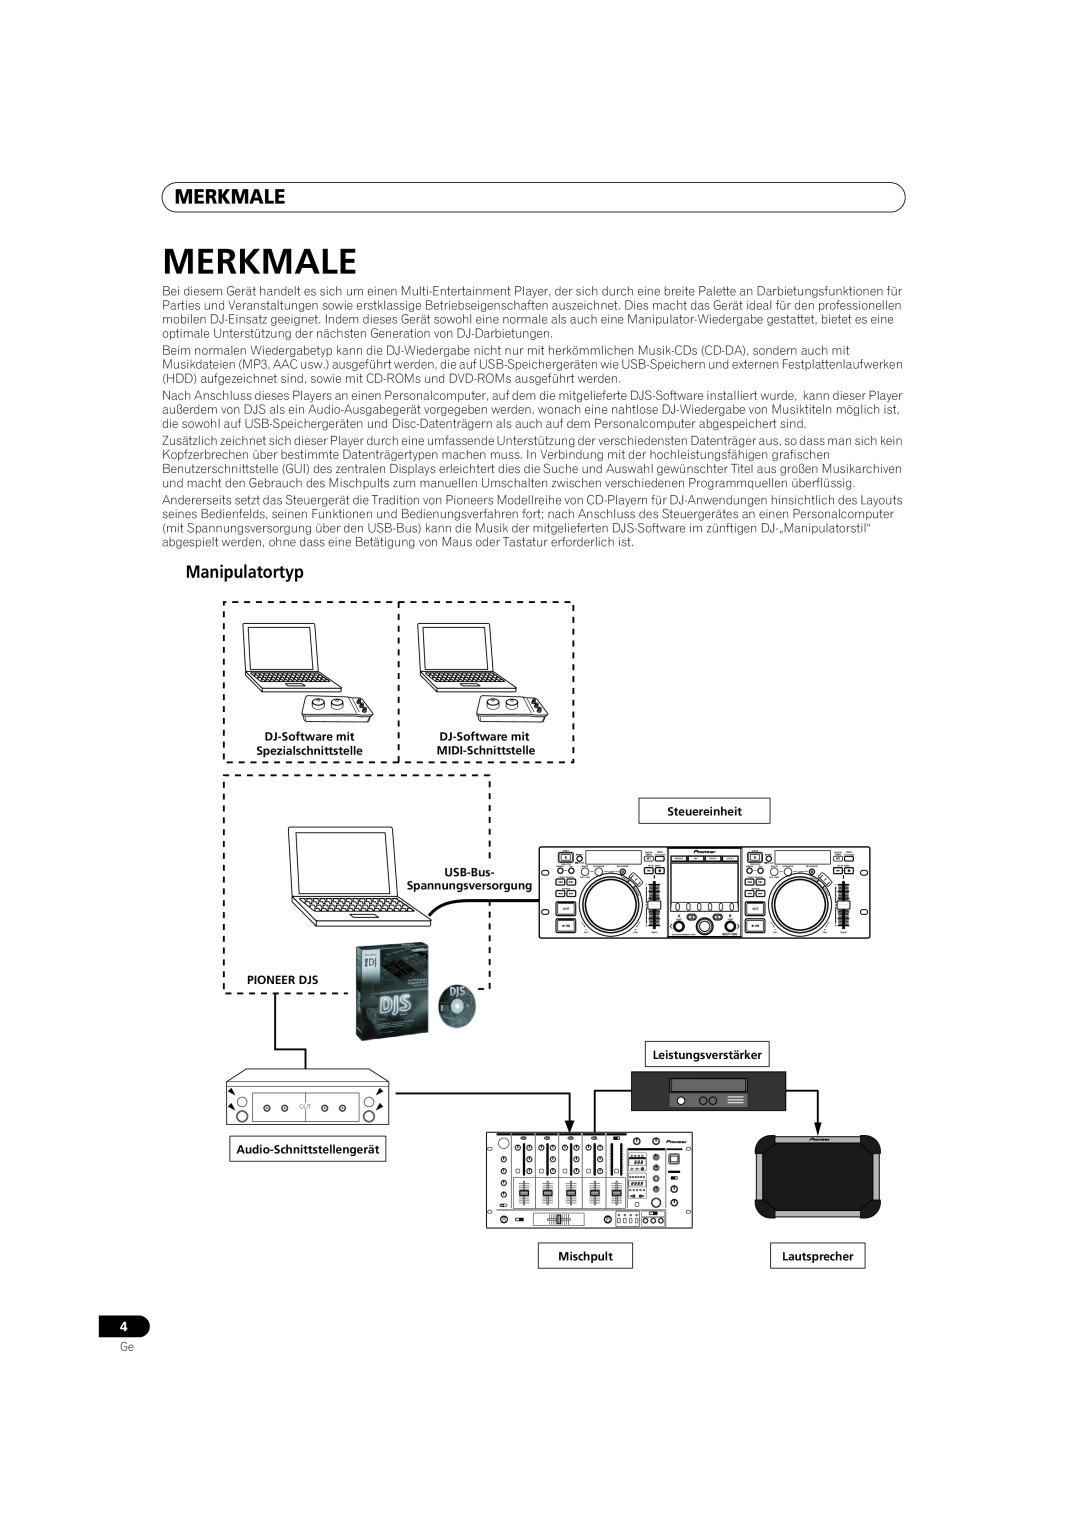 Pioneer MEP-7000 operating instructions Merkmale, Manipulatortyp 